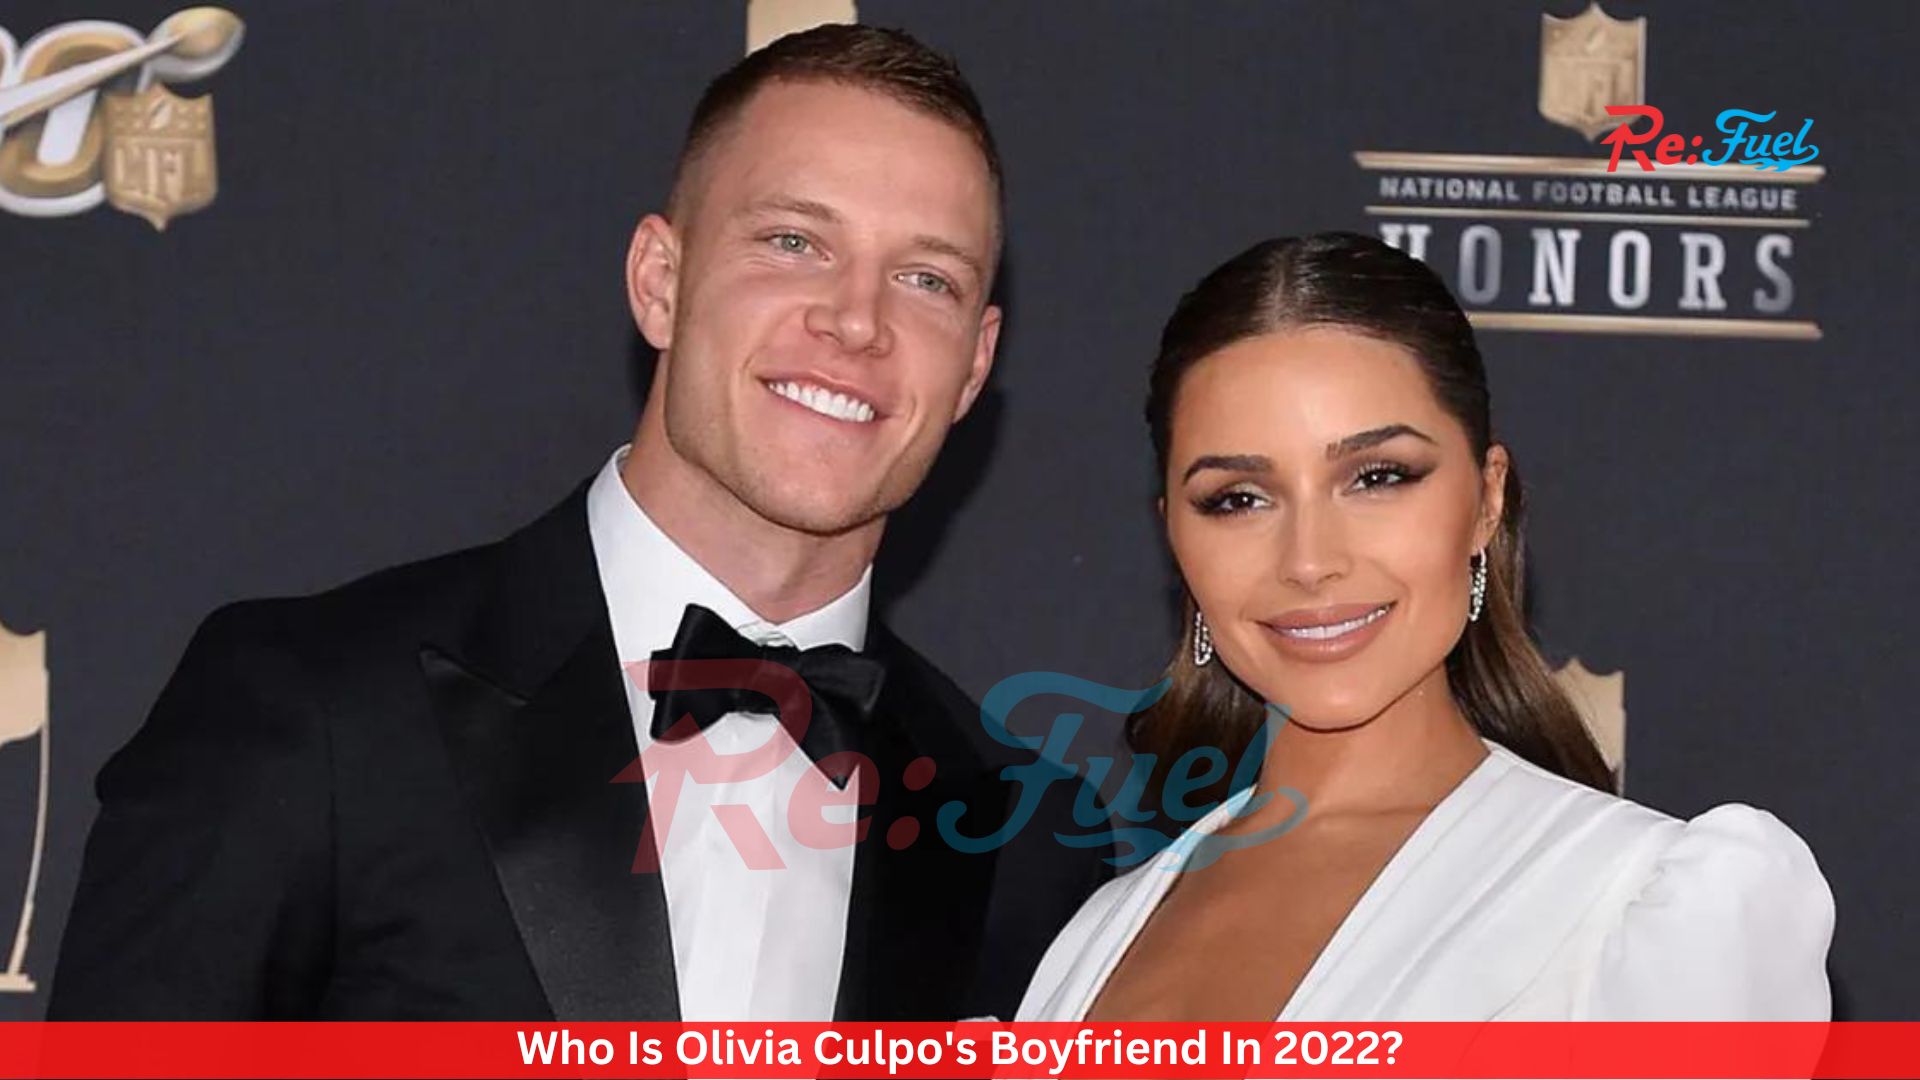 Who Is Olivia Culpo's Boyfriend In 2022?